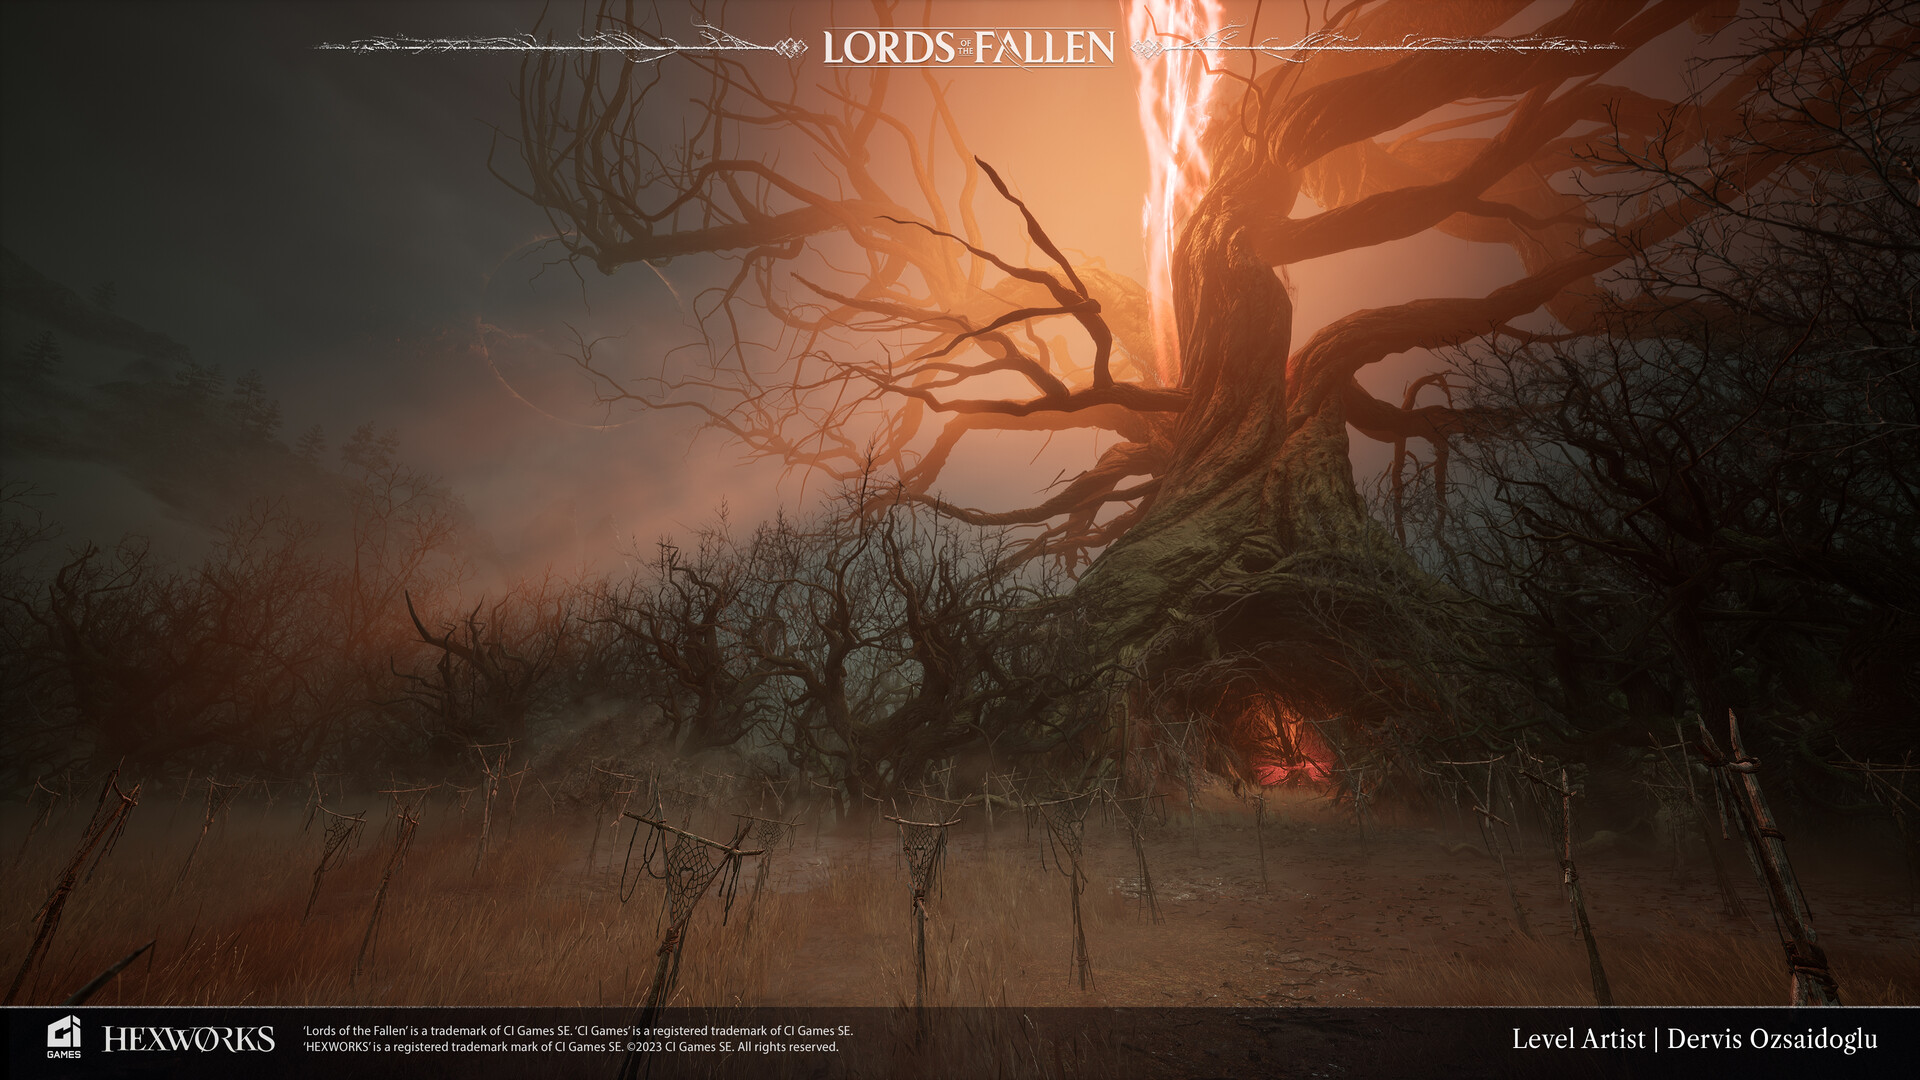 ArtStation - Lords of The Fallen - Forsaken Fen